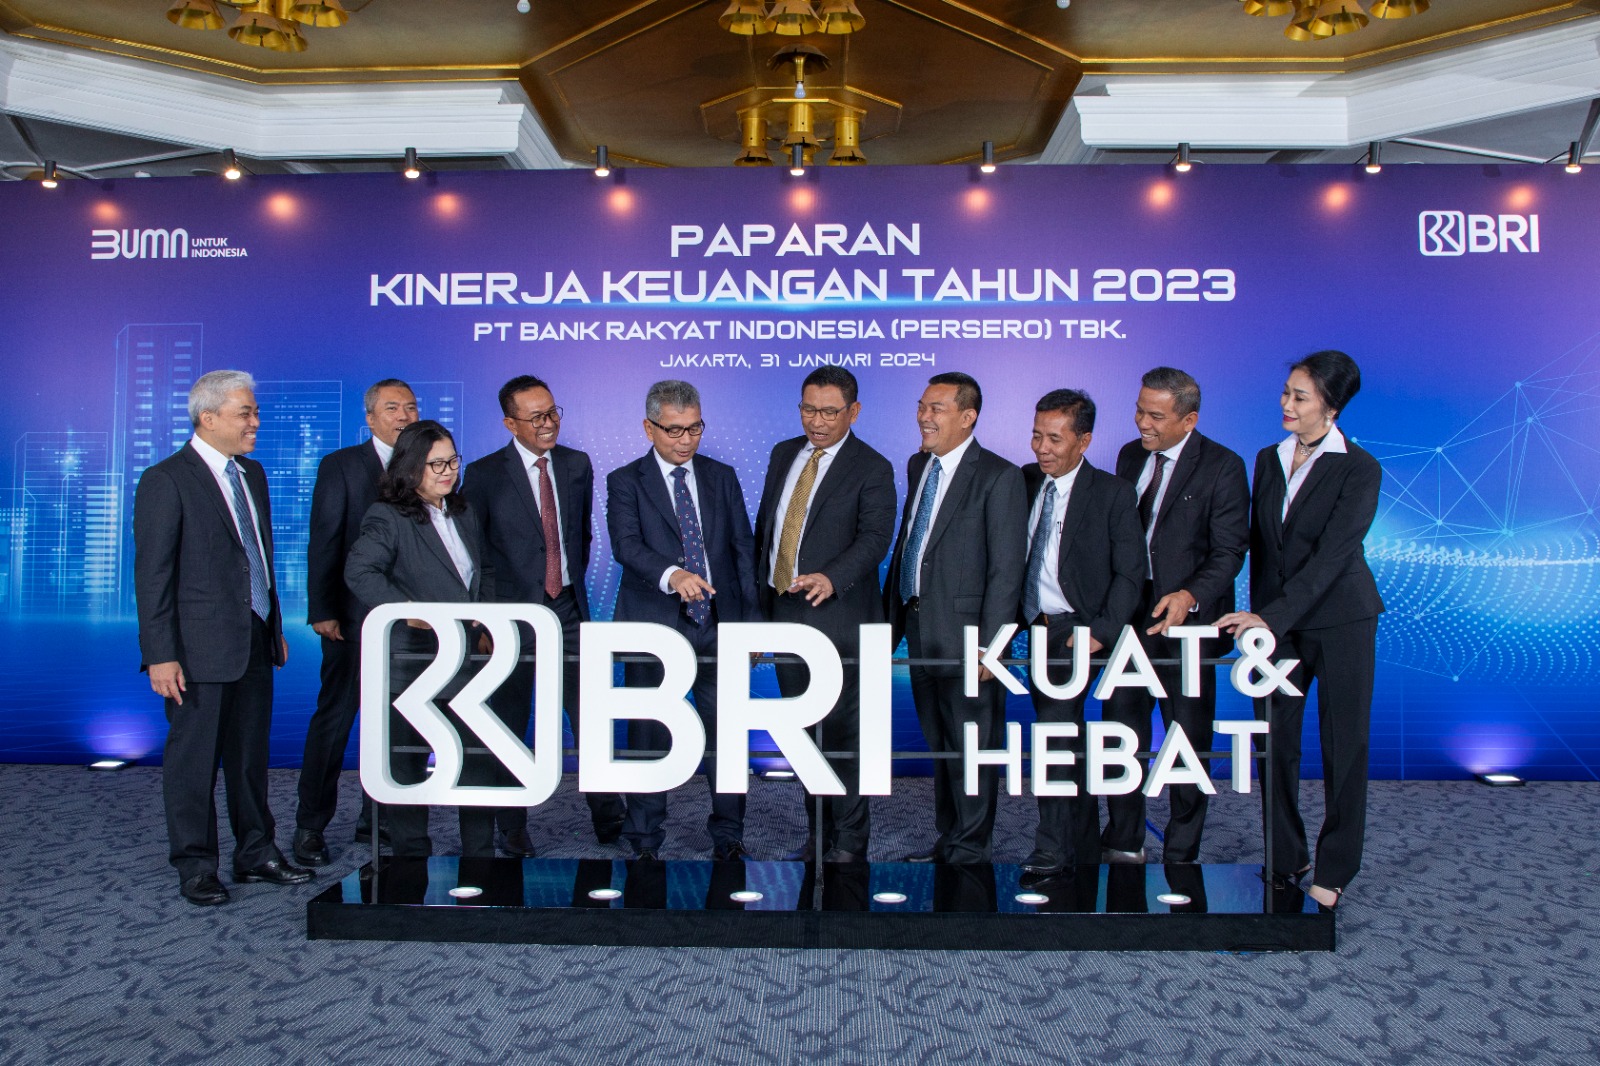 Semakin Kuat dan Hebat, Bank Rakyat Indonesia (BBRI) Cetak Laba Rp60,43 Triliun